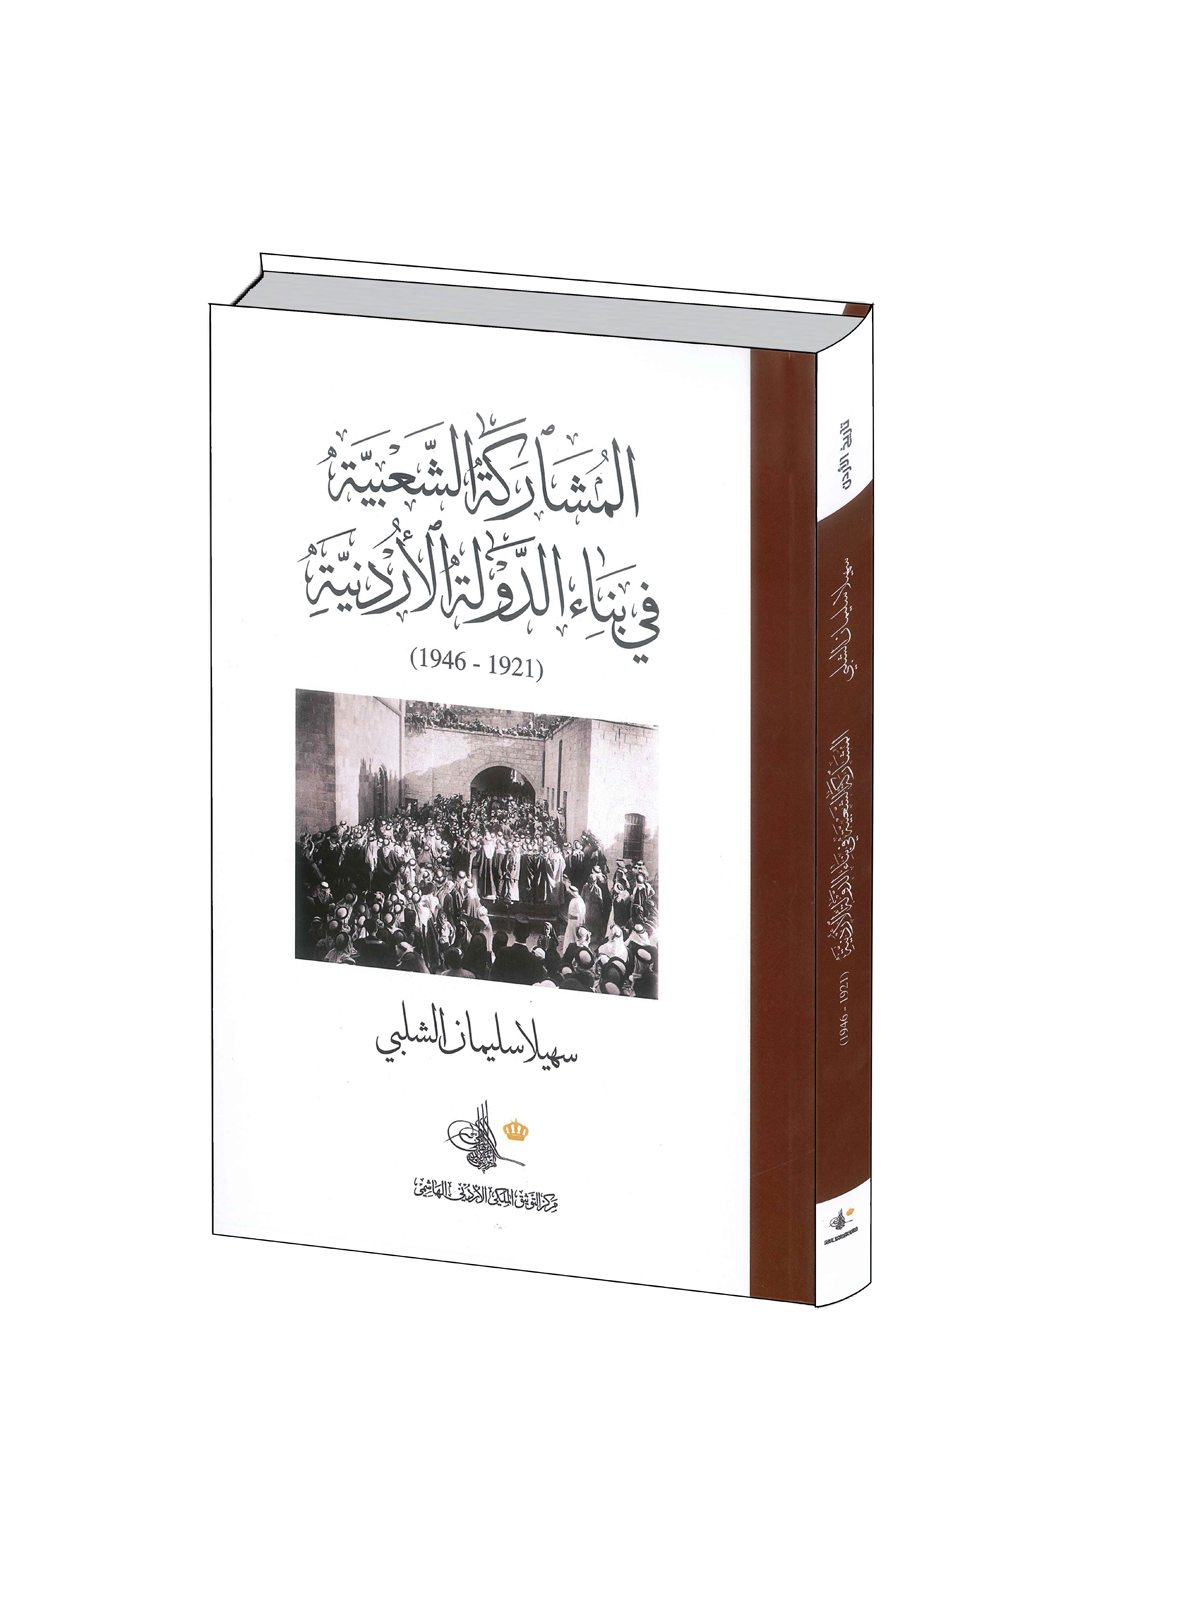 التوثيق الملكي يصدر كتاب المشاركة الشعبية في بناء الدولة الأردنية 1921- 1948 